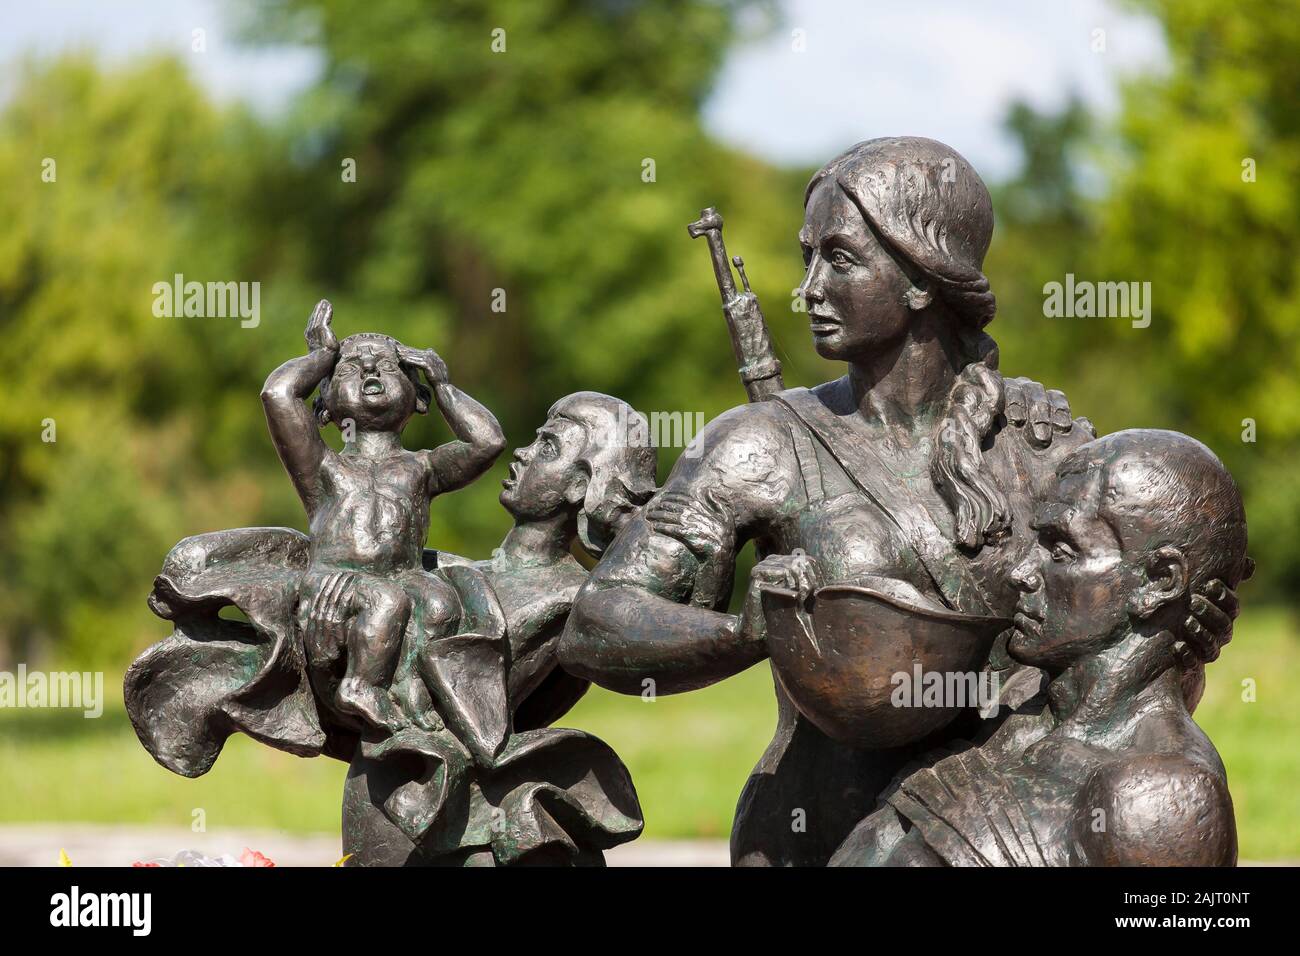 Ein Denkmal für die gefallenen Verteidiger der Festung Brest zeigt heldenhafte Soldaten und Ehefrauen, die die nationale Ehre verteidigen. Brest. Weißrussland Stockfoto